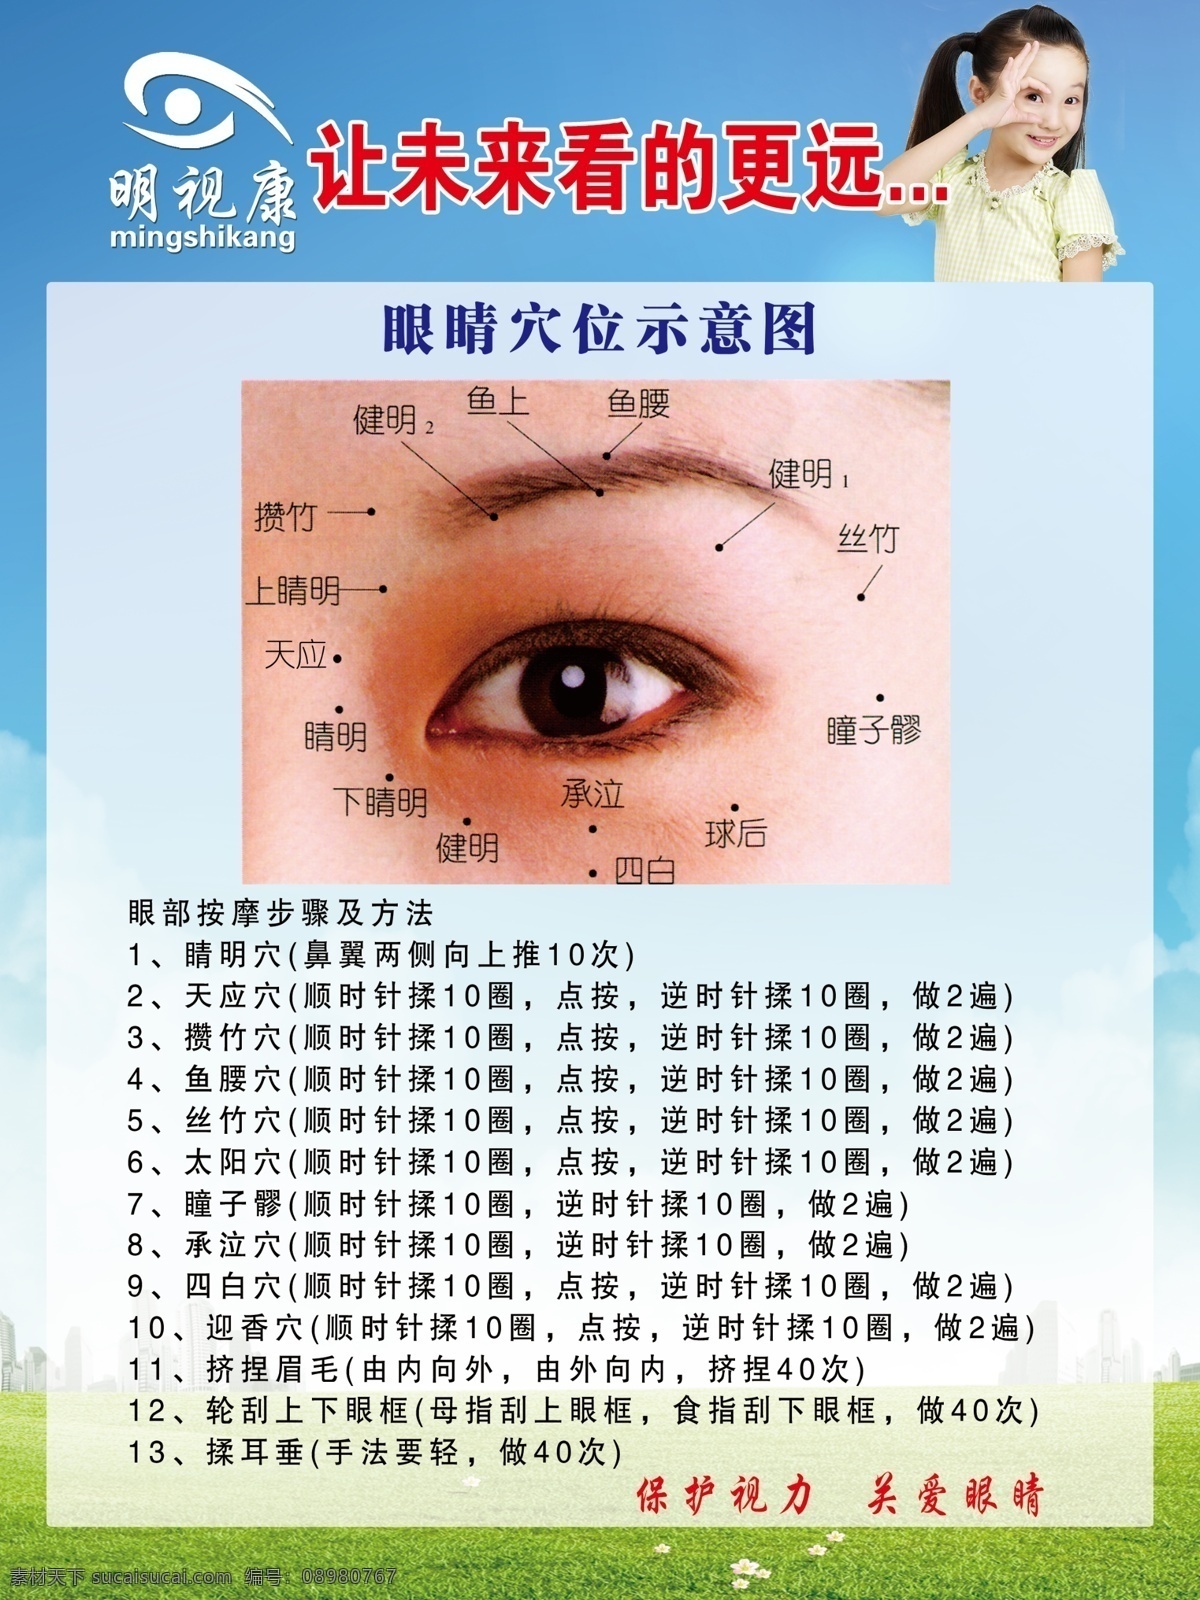 眼睛穴位图 眼球解刨图 眼球图 近视预防 近视弱视 近视矫正